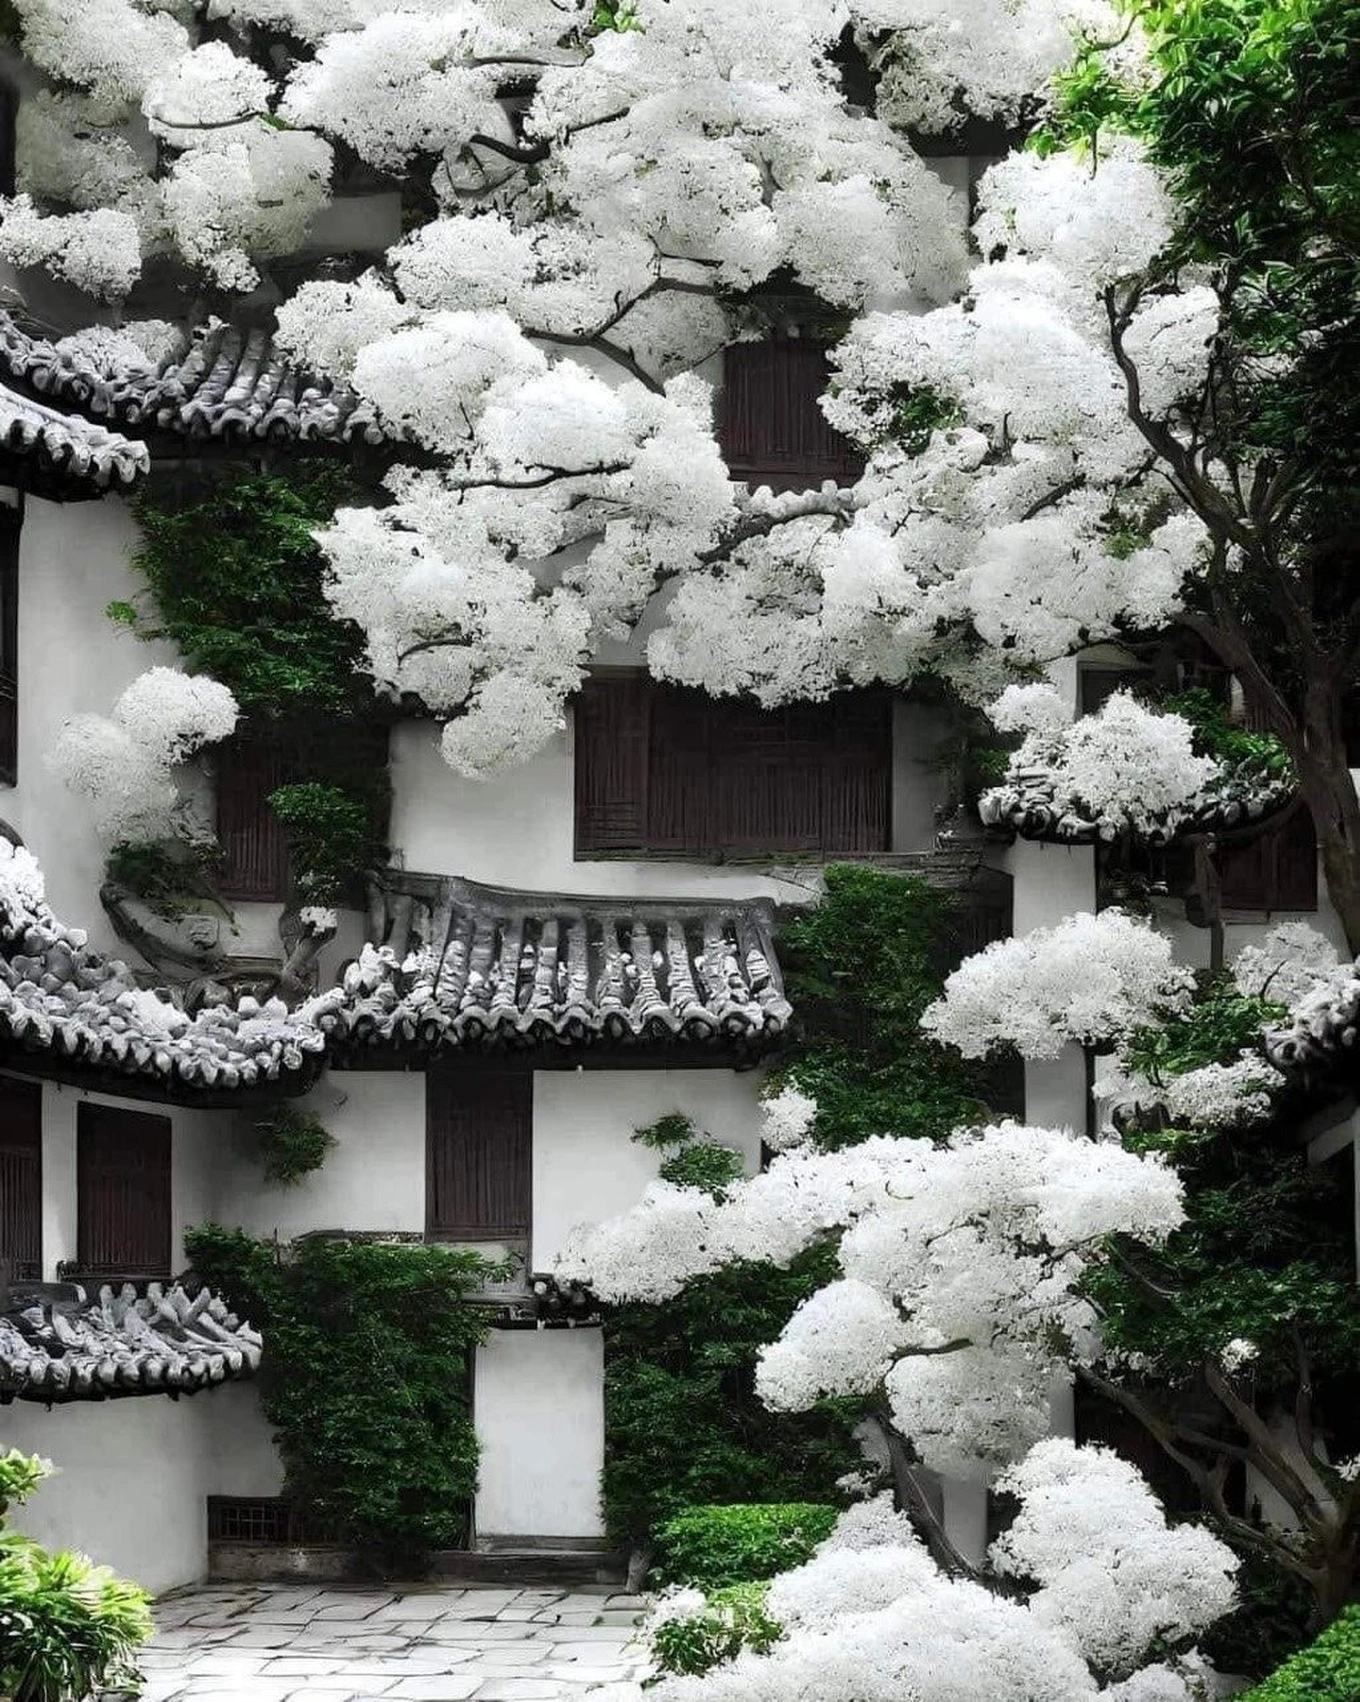 Cây cổ thụ đẹp nhất Trung Quốc, gần 900 năm tuổi vẫn nở hoa đều đặn